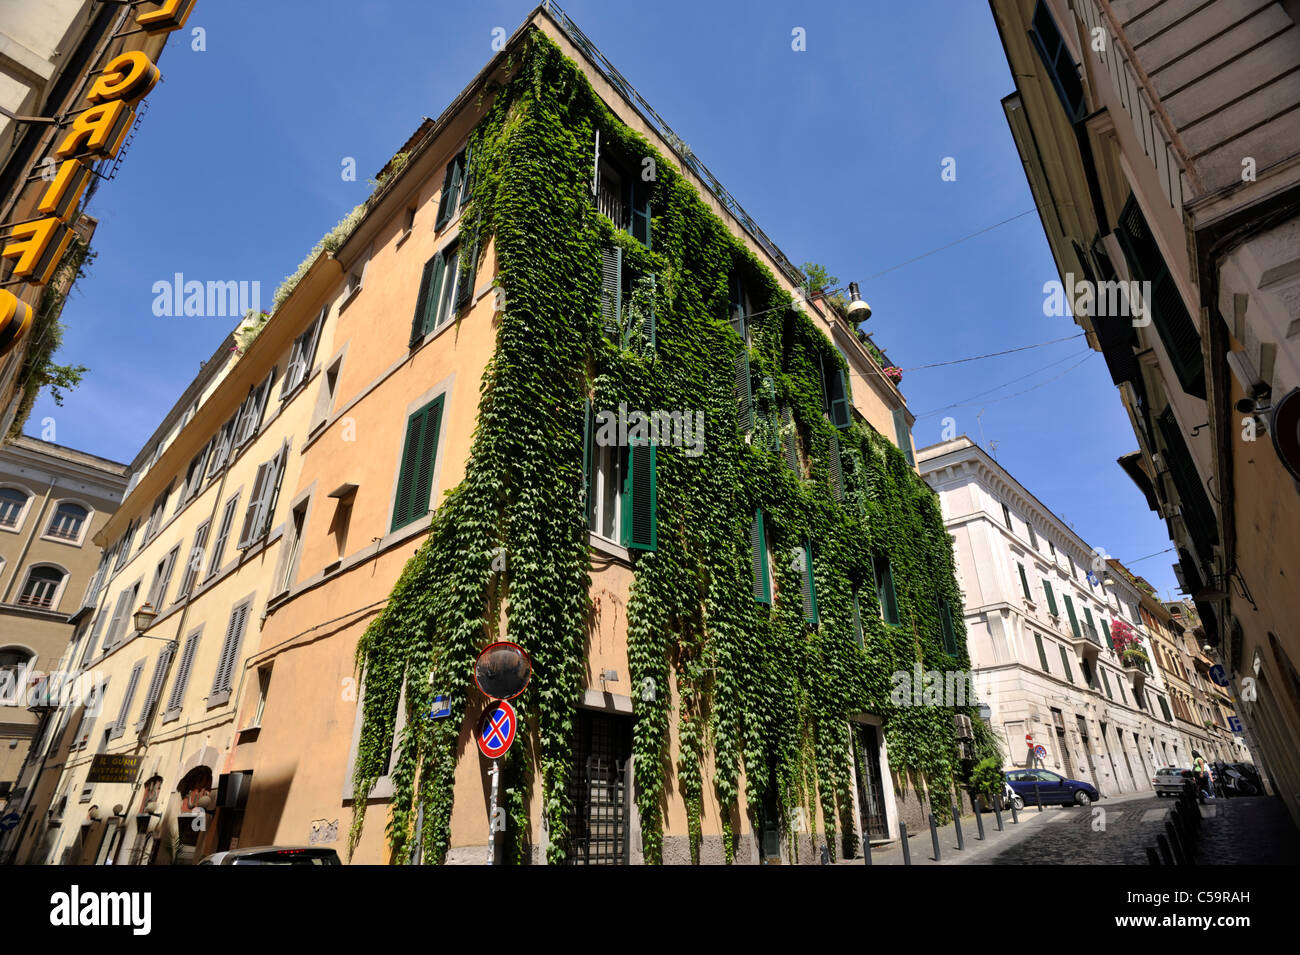 Italy, Rome, Monti district, Via del Boschetto Stock Photo